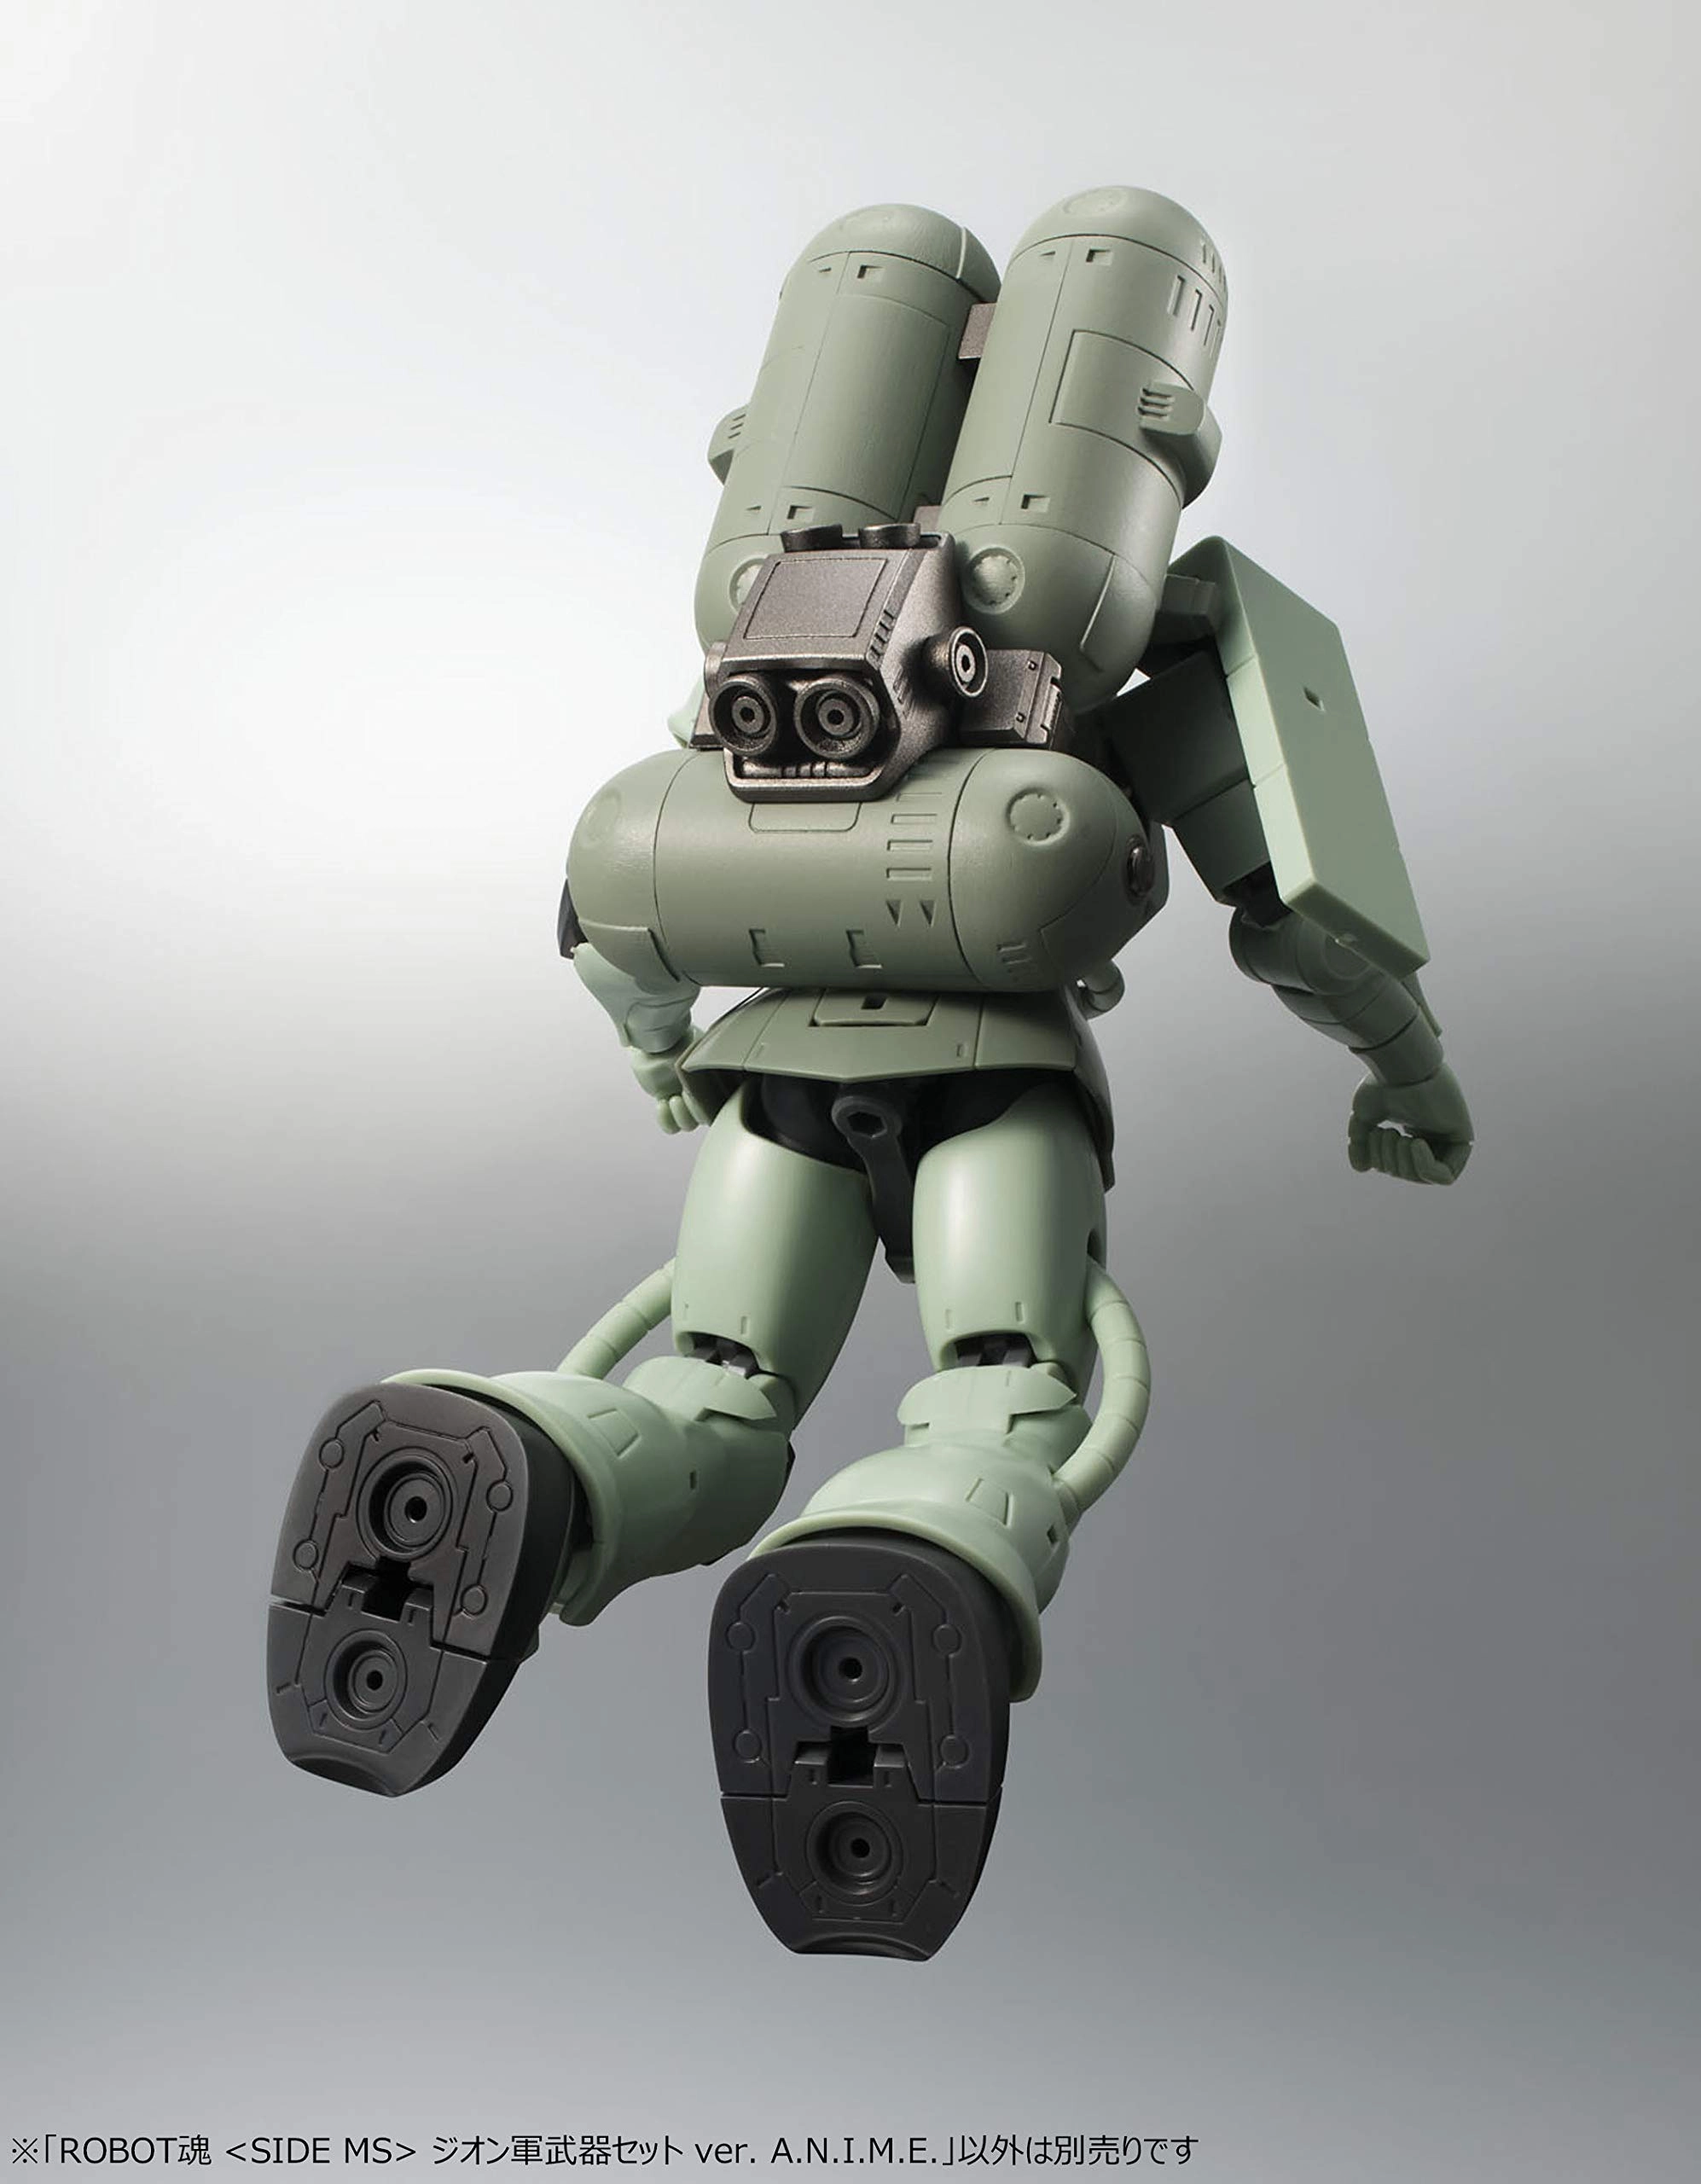 ふるいちオンライン - ROBOT魂 〈SIDE MS〉 ジオン軍武器セット ver